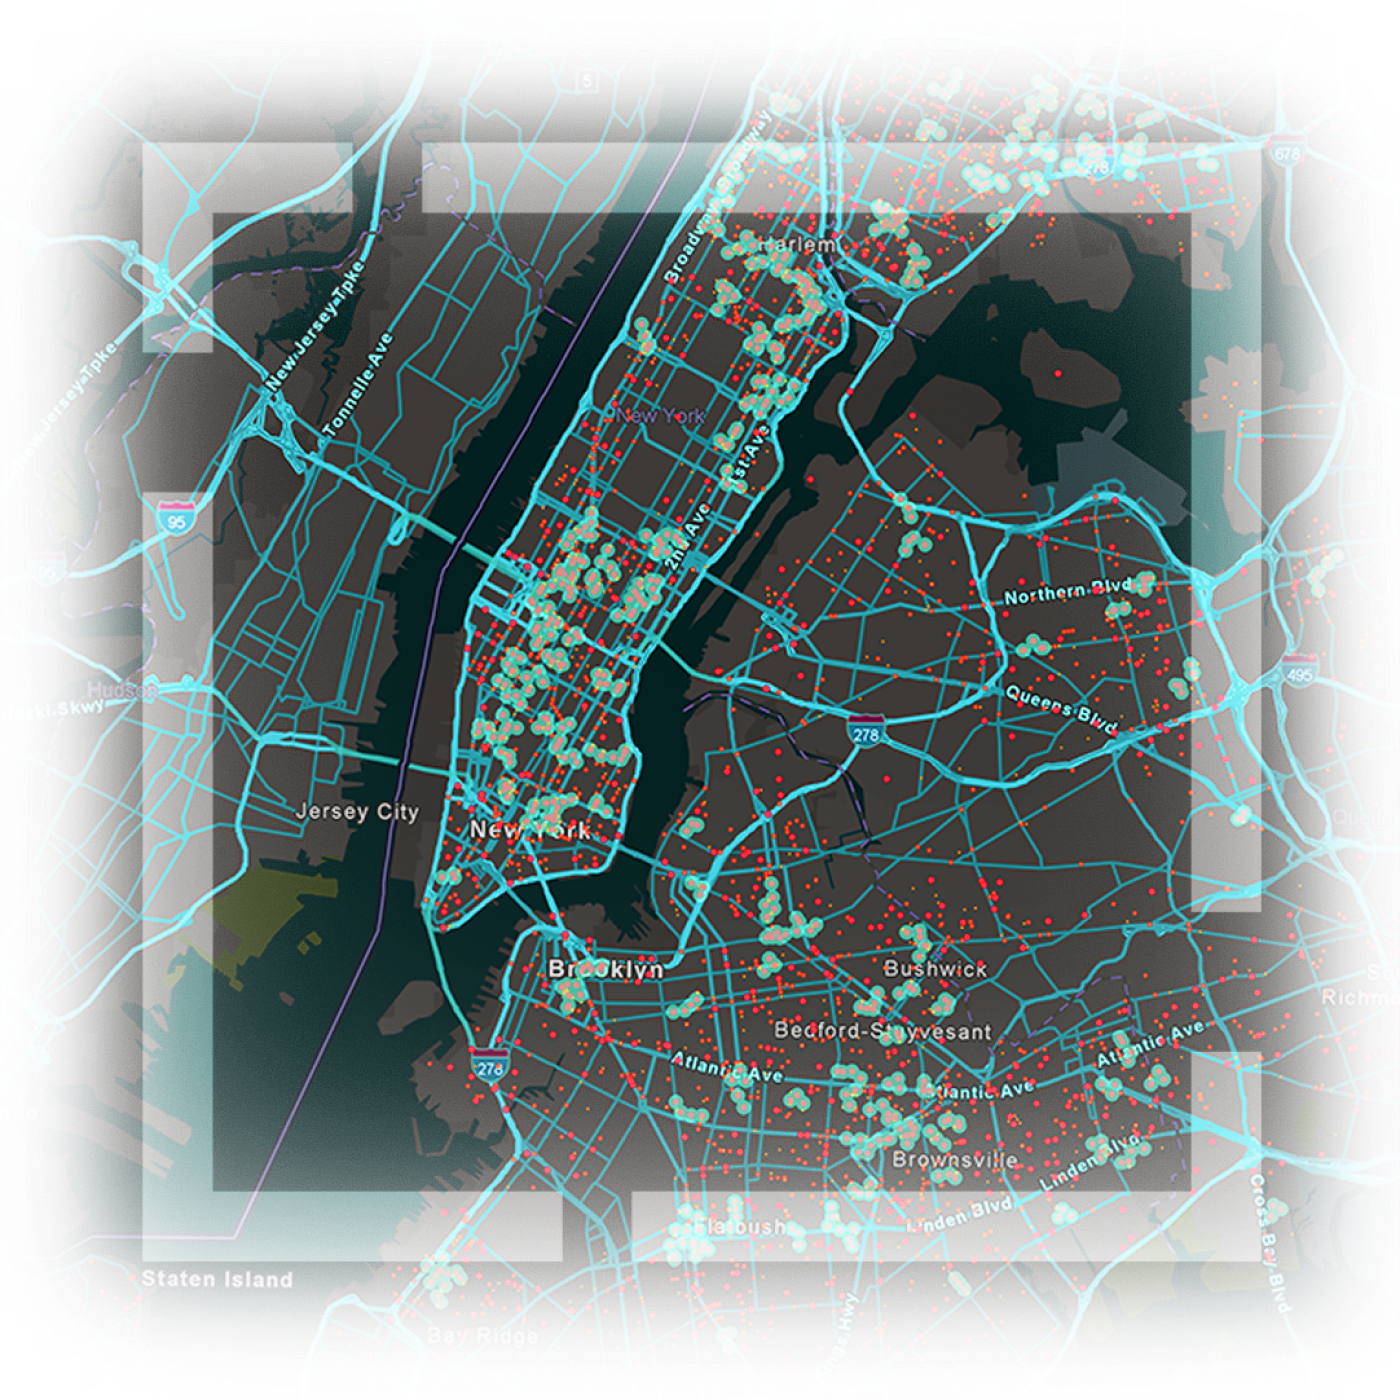 고속도로, 도로, 자산의 위치가 파란색 및 빨간색 선으로 강조 표시되어 있는 뉴욕시 맵고속도로, 도로, 자산의 위치가 파란색 및 빨간색 선으로 강조 표시되어 있는 뉴욕시 맵